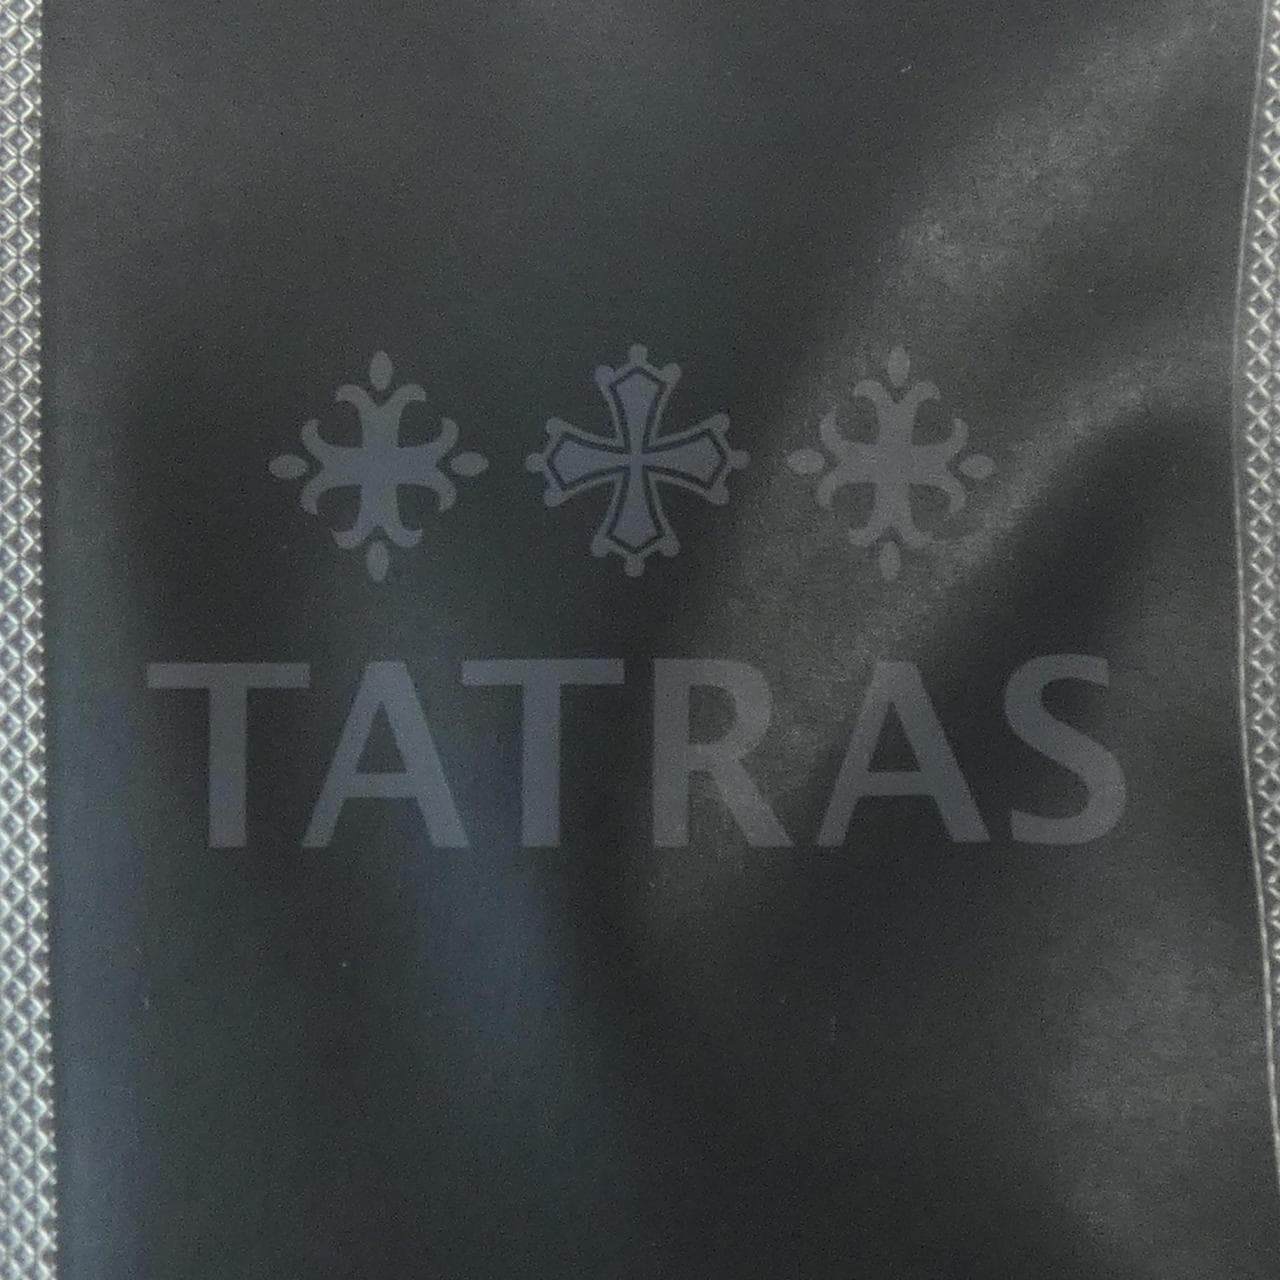 Tatras TATRAS down jacket